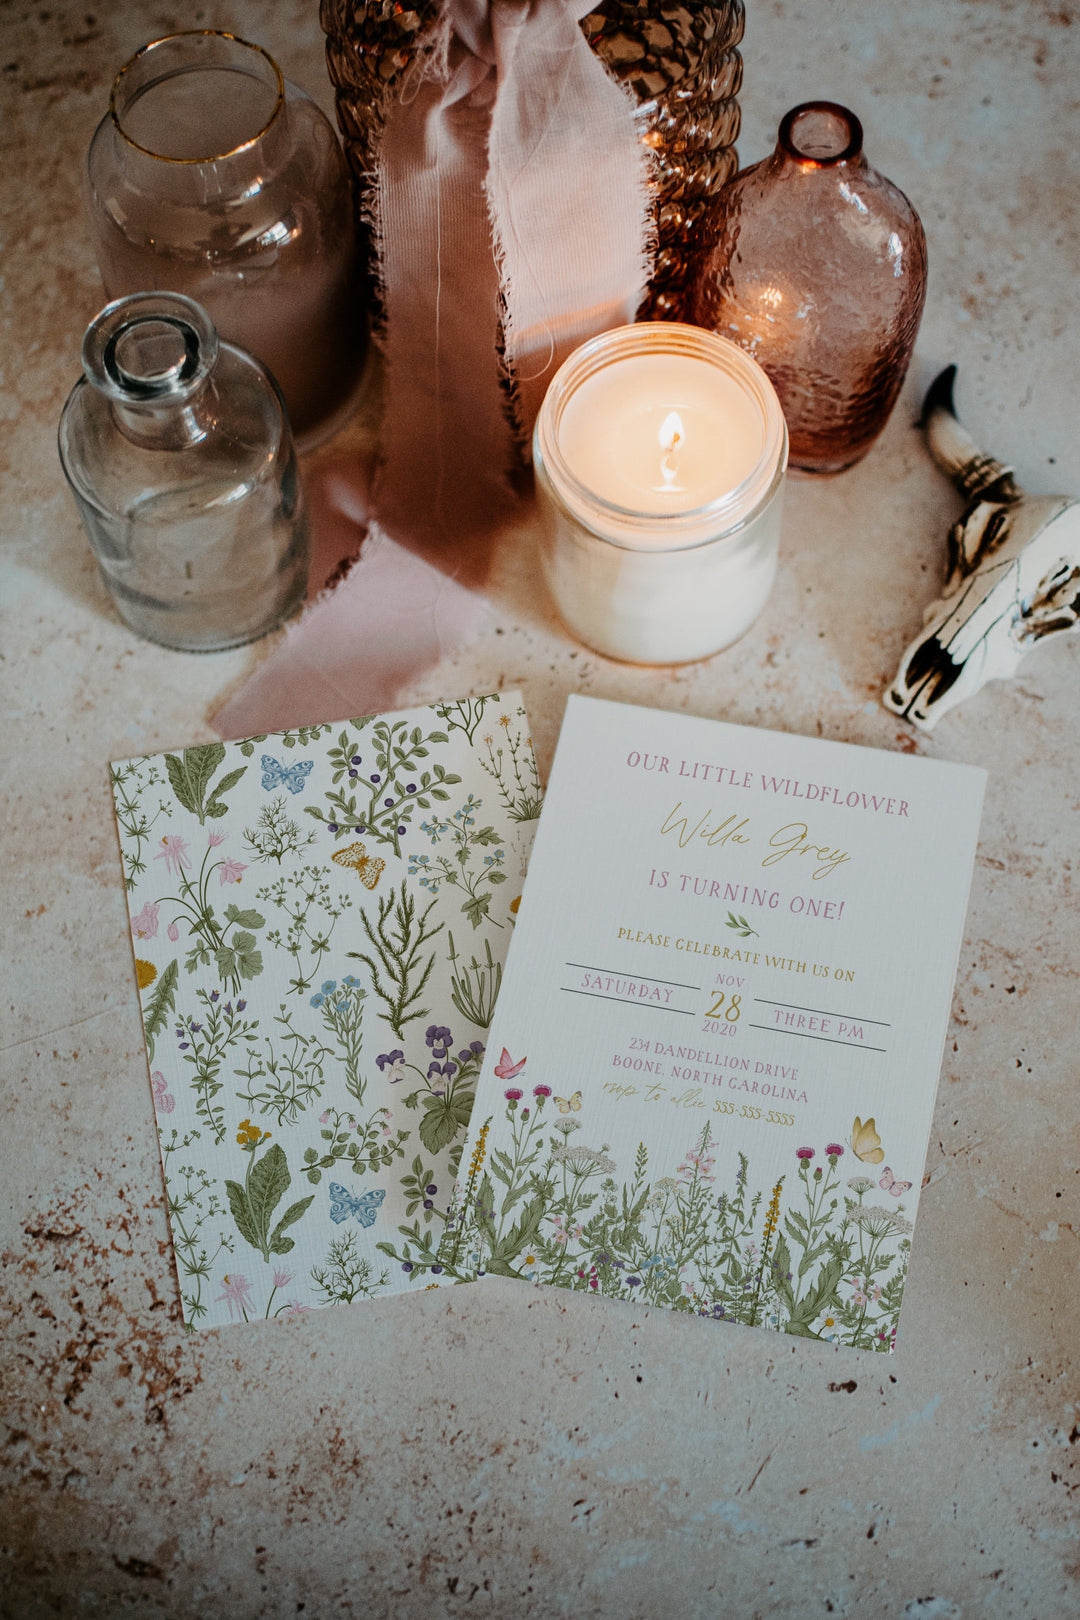 Wildflower Birthday Invitation - Our Little Wildflower Party Invitation - Wildflower Garden Birthday Invitation - Butterfly Wildflower Card